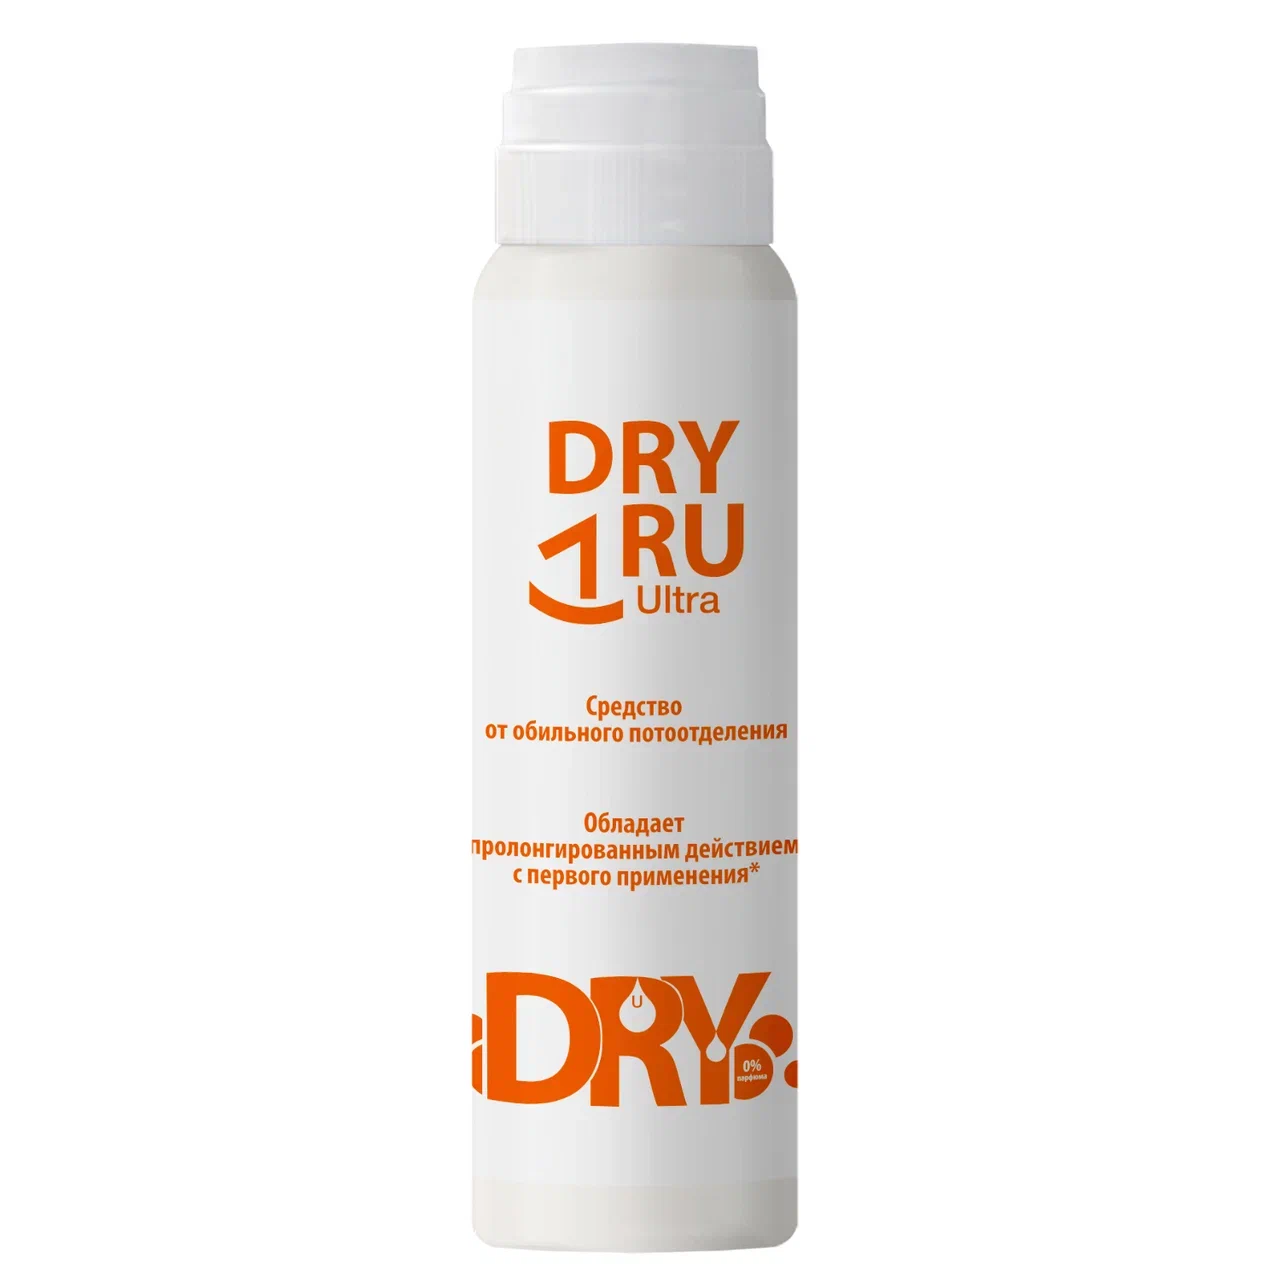 Дезодорант DRY RU Ультра от обильного потоотделения, с пролонгированным действием 50 мл дезодорант dry control экстра форте от обильного потоотделения 30% фл 50 мл